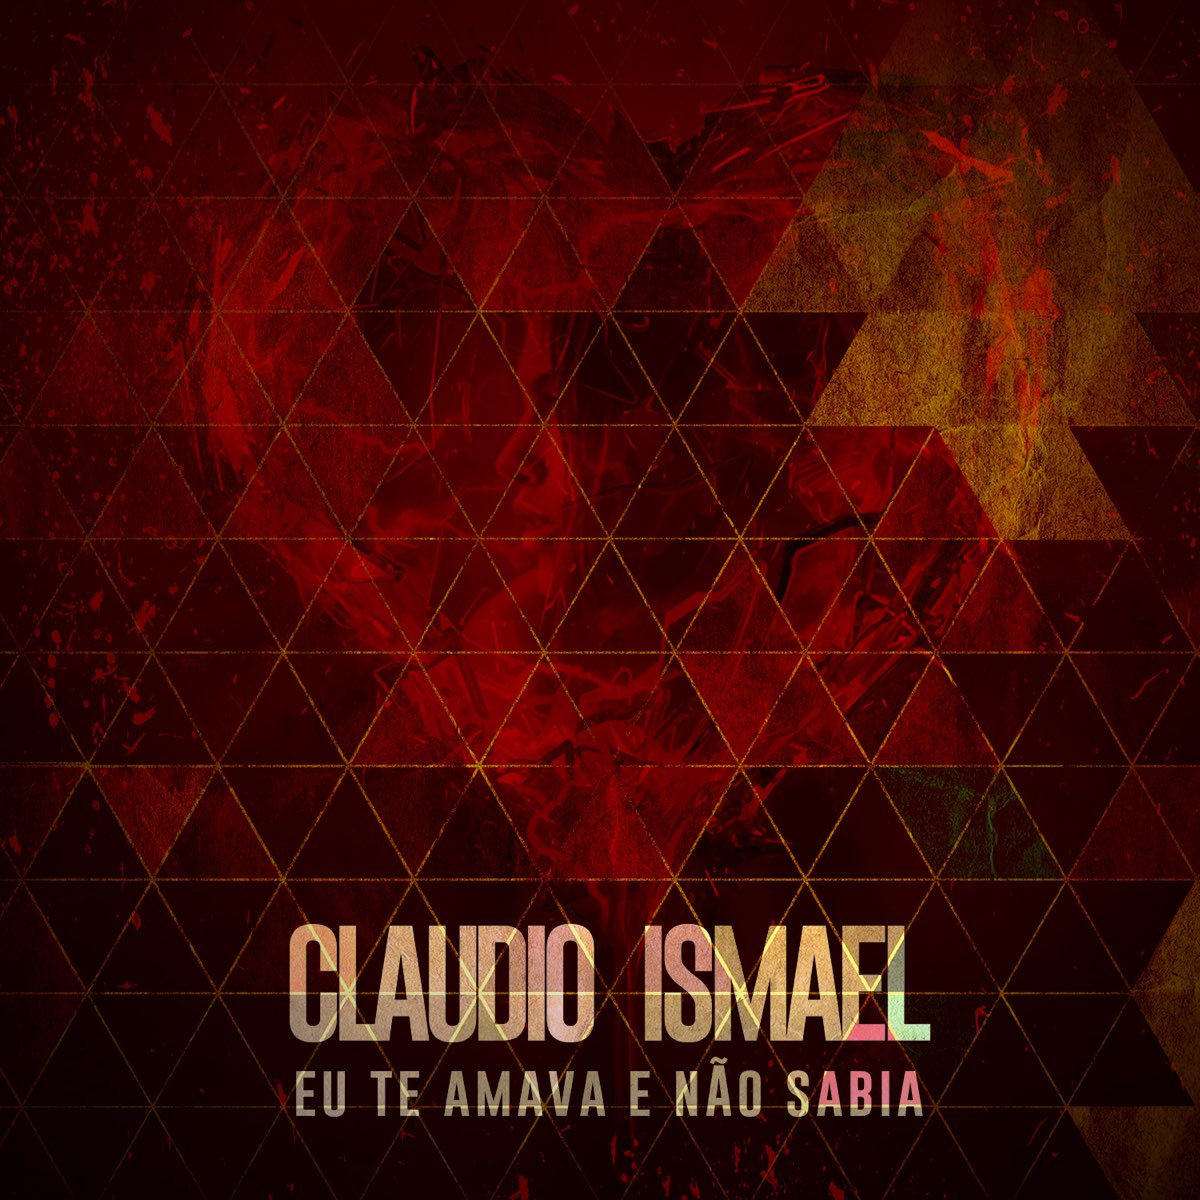 ‎eu Te Amava E Não Sabia Single By Claudio Ismael On Apple Music